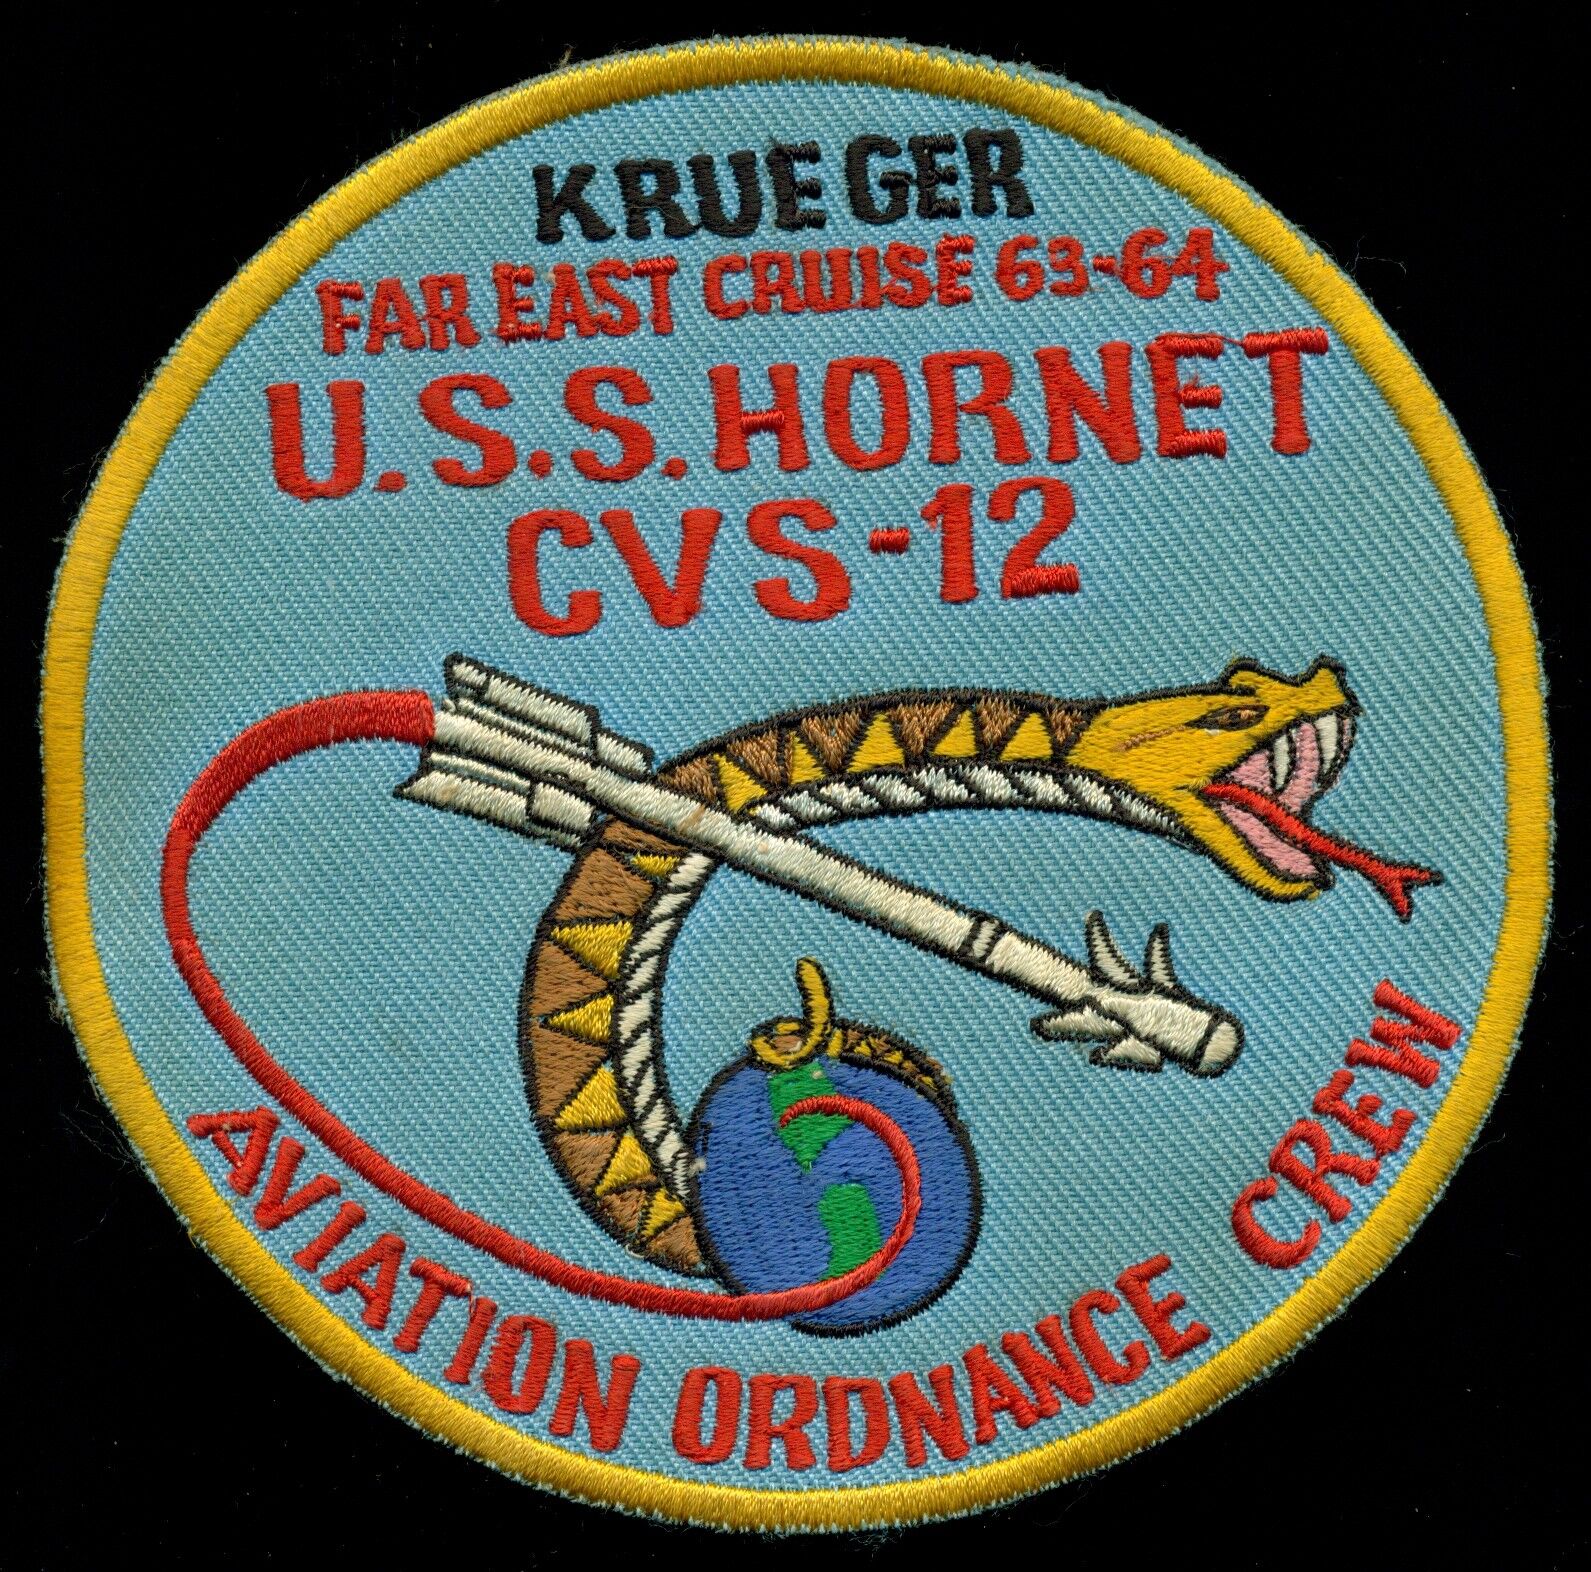 USN USS Hornet CVS-12 KRUEGER Far East Cruise 1963-1964 Patch N-7